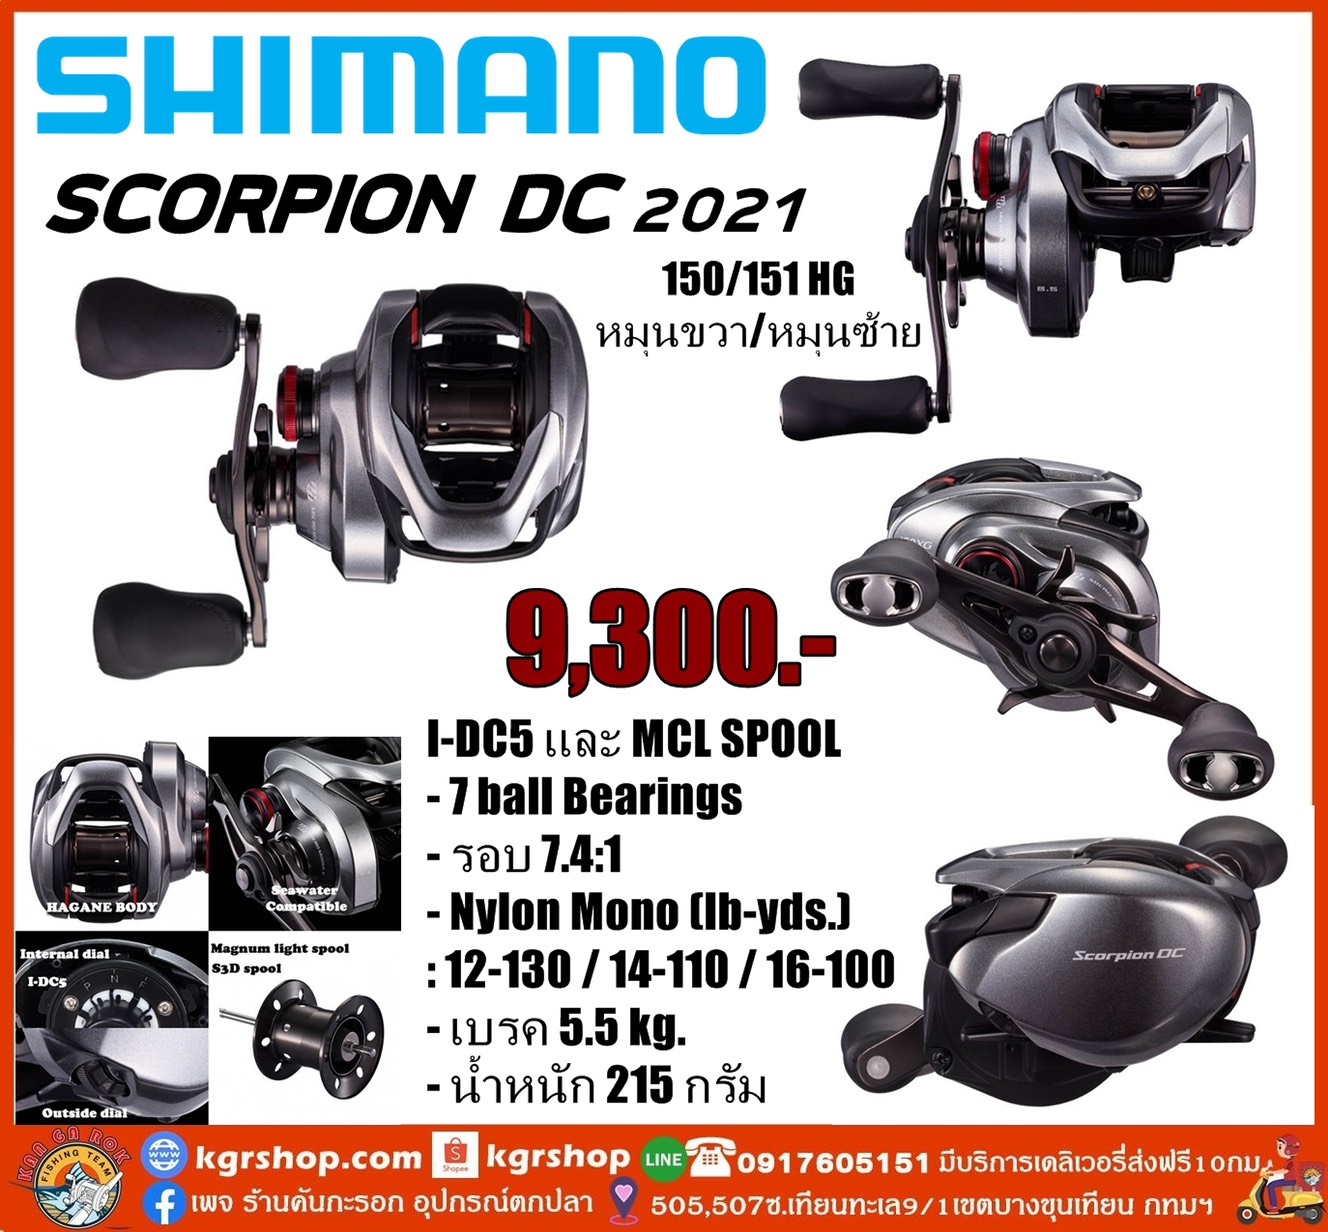 Scorpion 2021 shimano dc Shimano 21